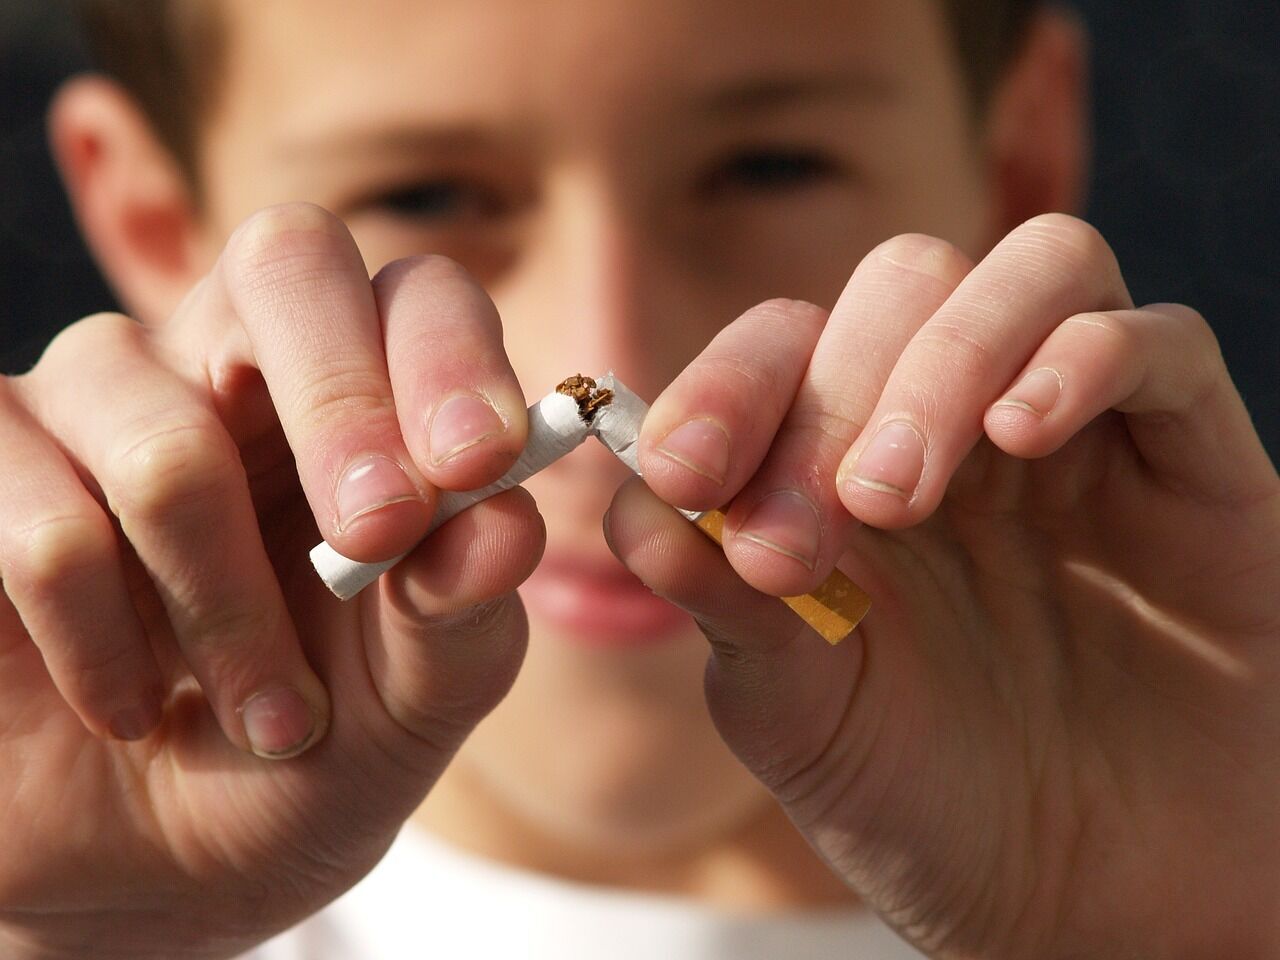 Контакт із курцями у сім'ї сприяє розвитку тяги до куріння у підлітків